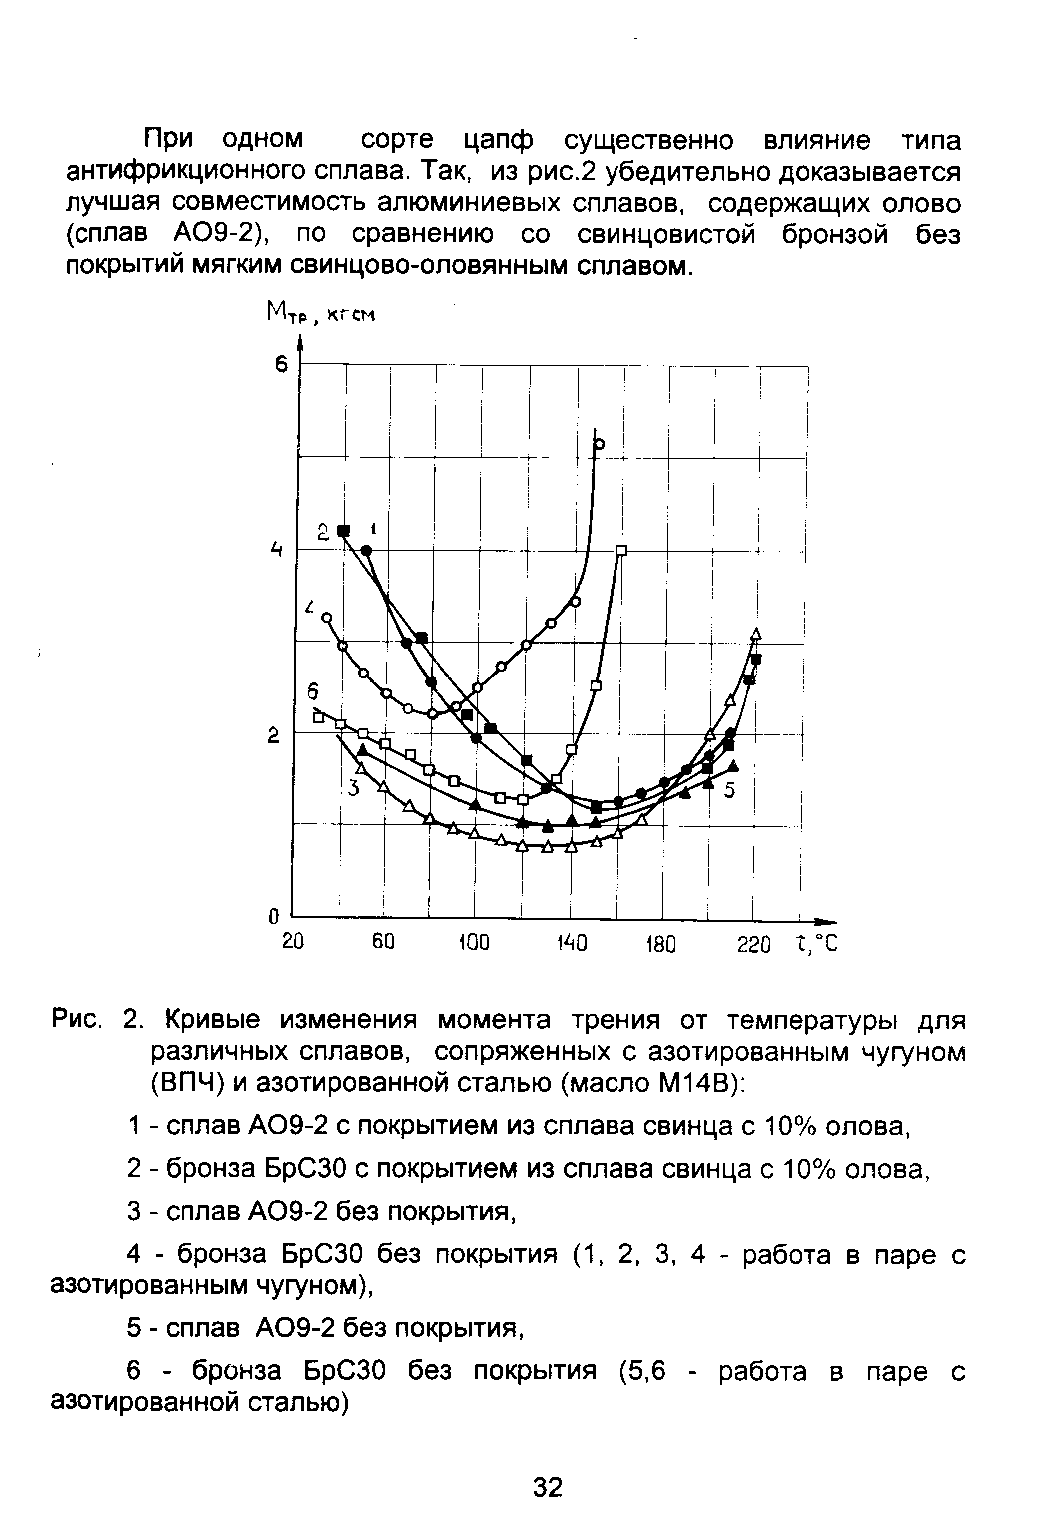 Рис. 2. Кривые изменения <a href="/info/241343">момента трения</a> от температуры для различных сплавов, сопряженных с <a href="/info/70312">азотированным чугуном</a> (ВПЧ) и <a href="/info/92774">азотированной сталью</a> (масло М14В) 
